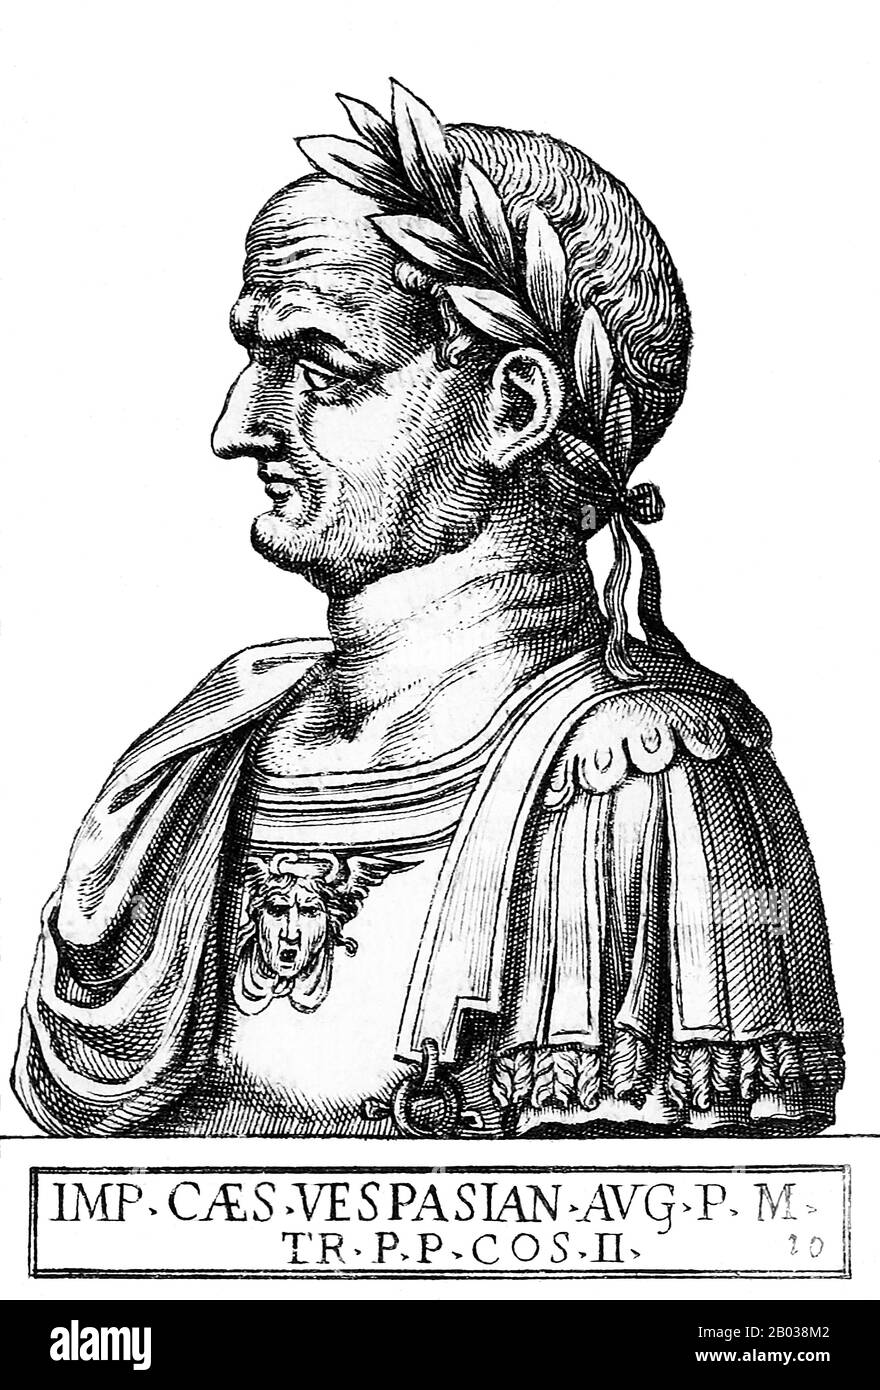 D'une famille équestre qui s'est élevée au rang de sénatrice sous la dyansty Julio-Claudian, Vespasianus - comme on l'appelait alors - a gagné beaucoup de renommée par son record militaire. Il a d'abord servi pendant l'invasion romaine de la Grande-Bretagne en 43 ce, et a ensuite été envoyé par l'empereur Nero pour conquérir la Judée en 66 ce, pendant la rébellion juive. Lors de son siège de Jérusalem, des nouvelles lui sont parvenues du suicide de Nero et de la guerre civile tumultueuse qui s'est produite par la suite, connue sous le nom d'année des Quatre Empereurs. Lorsque Vitellius est devenu le troisième empereur en avril 69, les légions romaines d'Egypte et de Judée ont déclaré Vep Banque D'Images